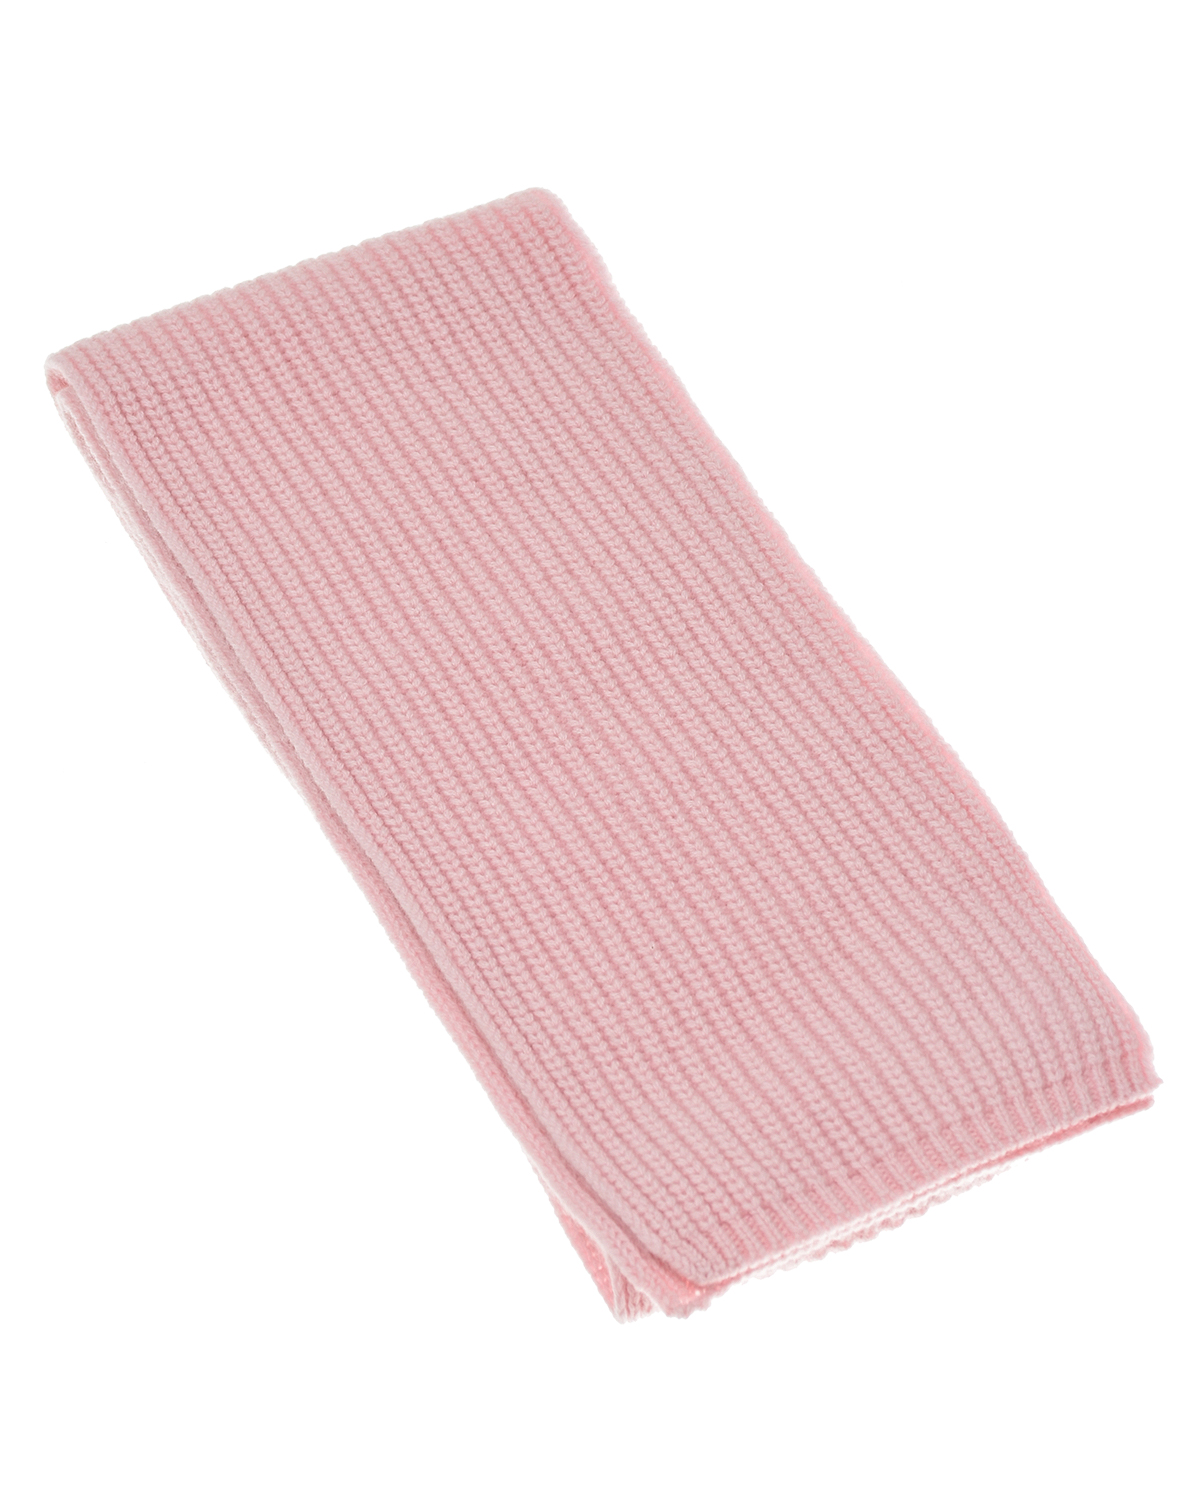 Розовый шарф из кашемира, 160x16 см Yves Salomon детский, размер unica - фото 1